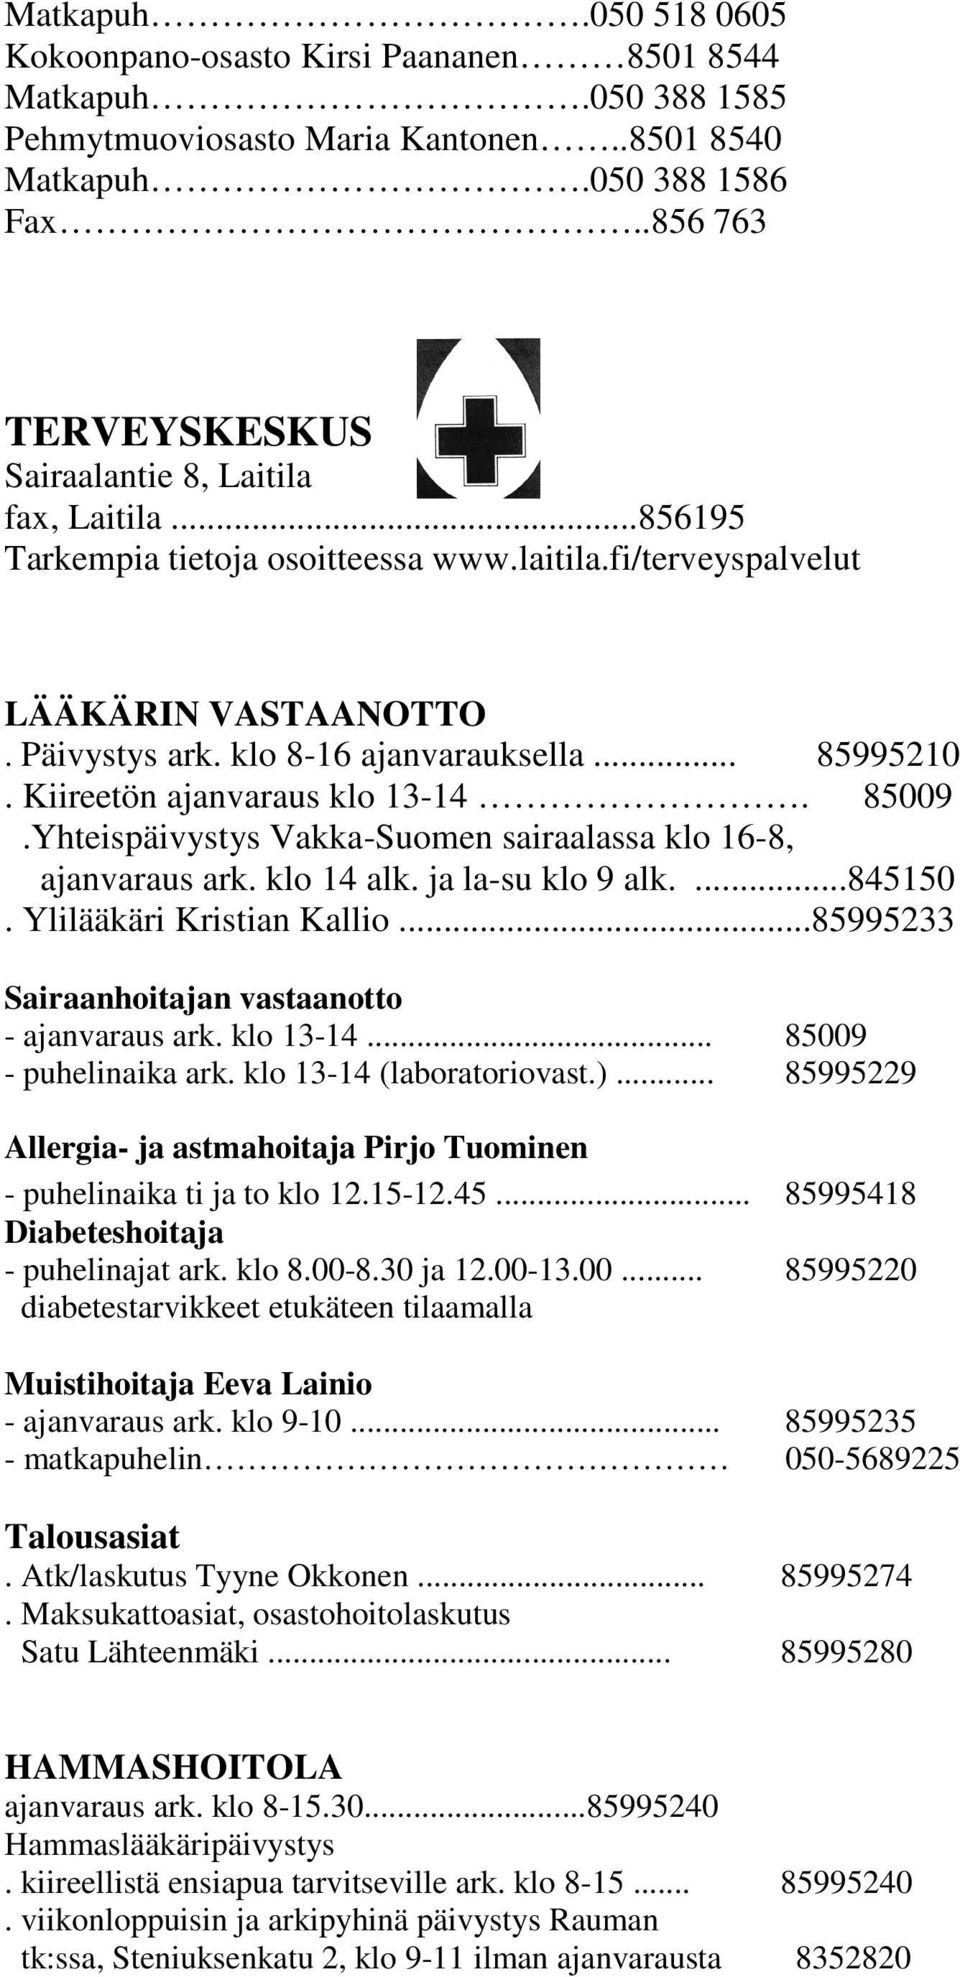 .. 85995210. Kiireetön ajanvaraus klo 13-14. 85009.Yhteispäivystys Vakka-Suomen sairaalassa klo 16-8, ajanvaraus ark. klo 14 alk. ja la-su klo 9 alk....845150. Ylilääkäri Kristian Kallio.